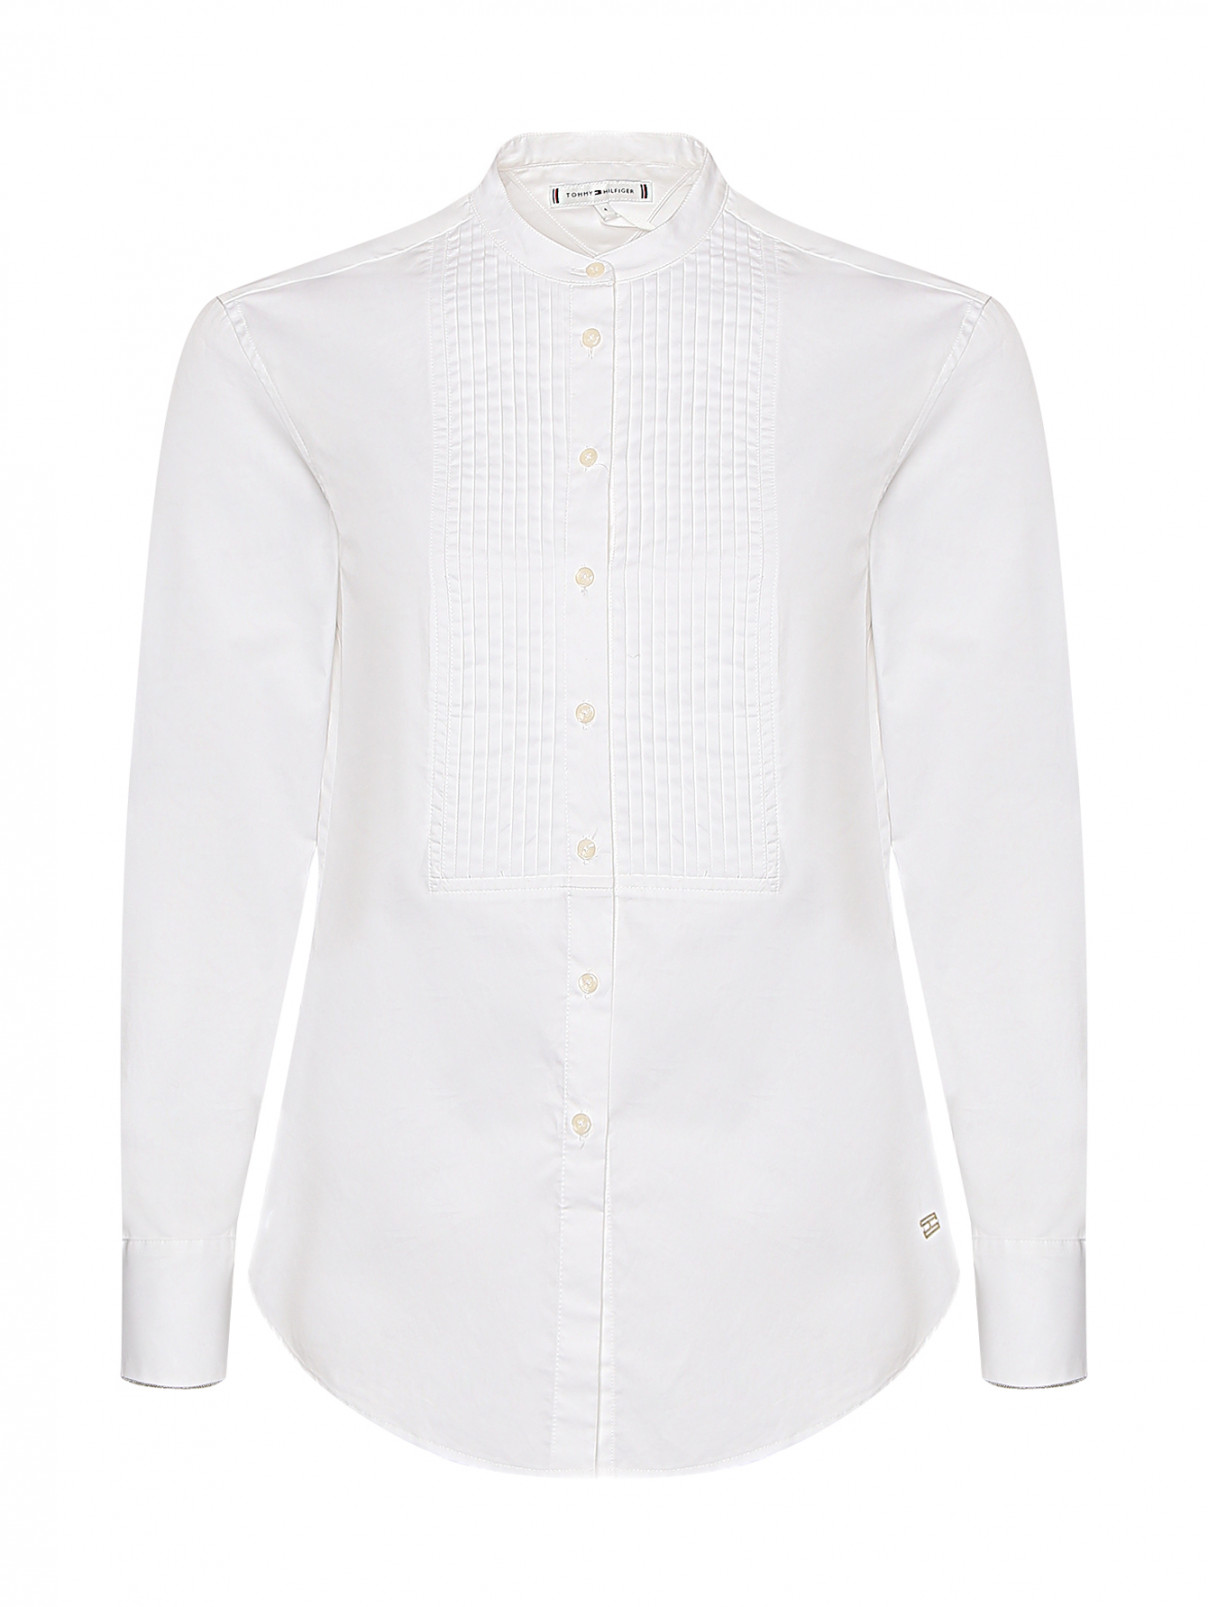 Блуза из хлопка Tommy Hilfiger  –  Общий вид  – Цвет:  Белый